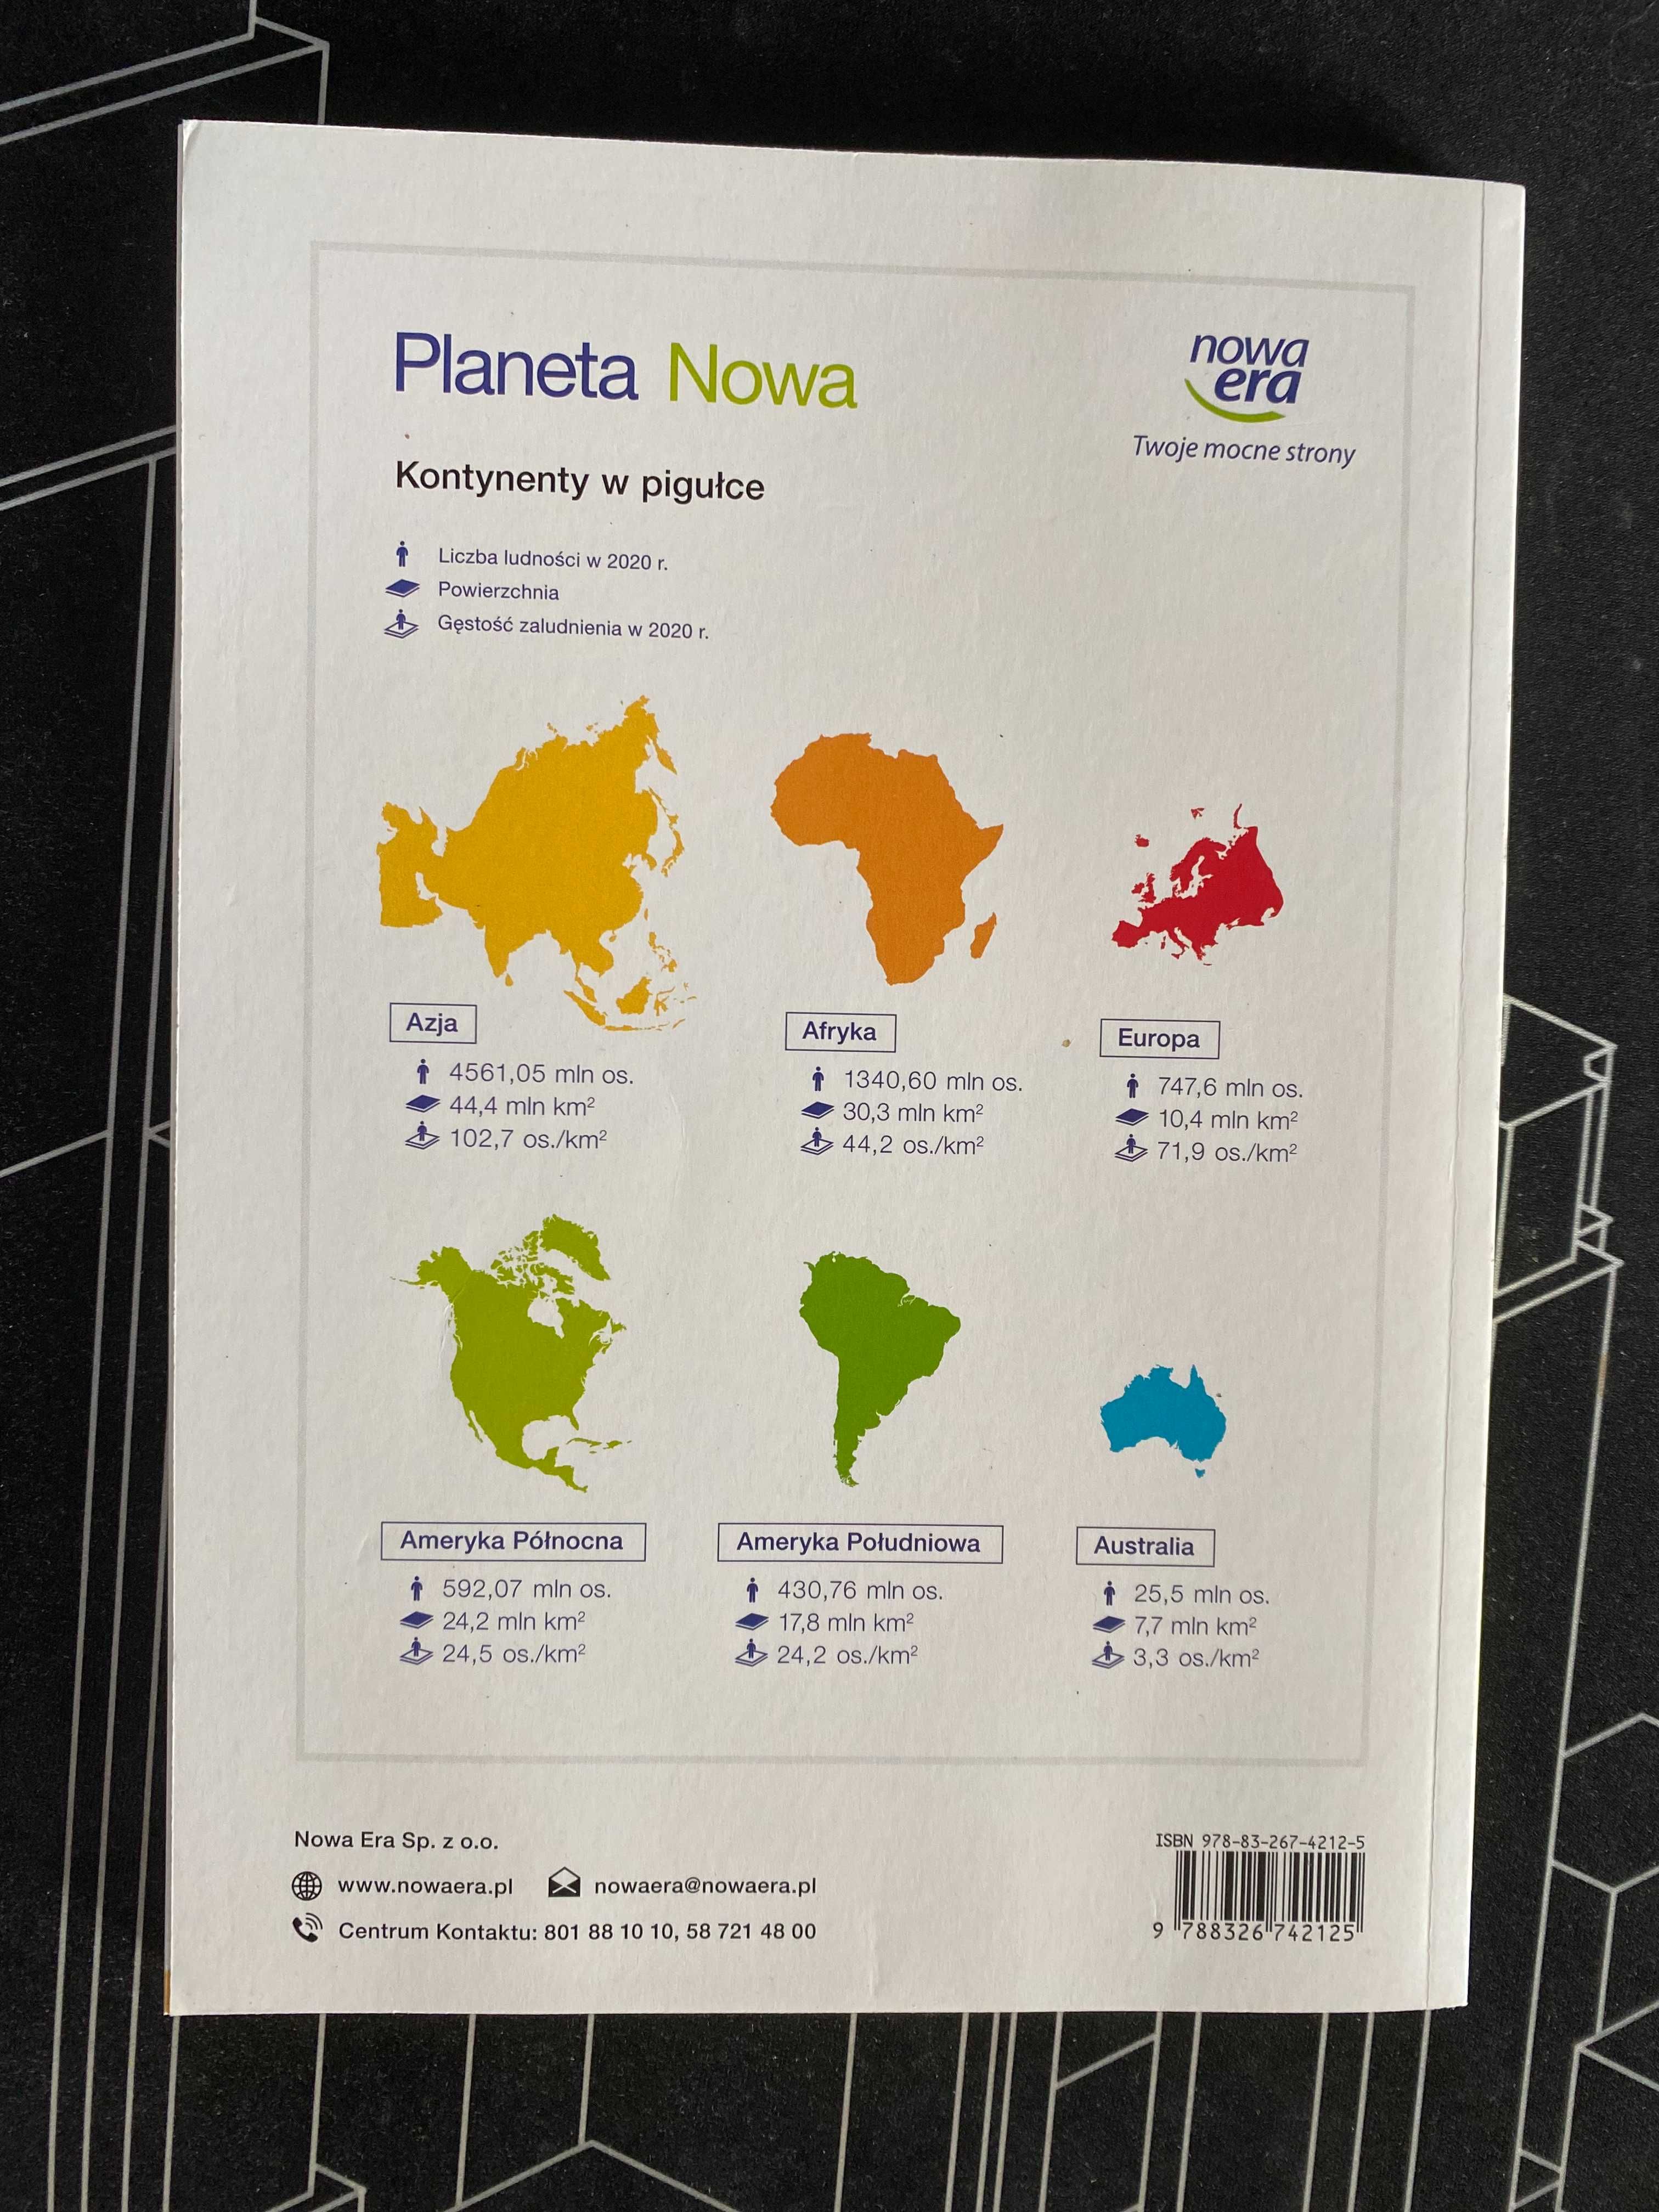 Planeta Nowa 8 podręcznik